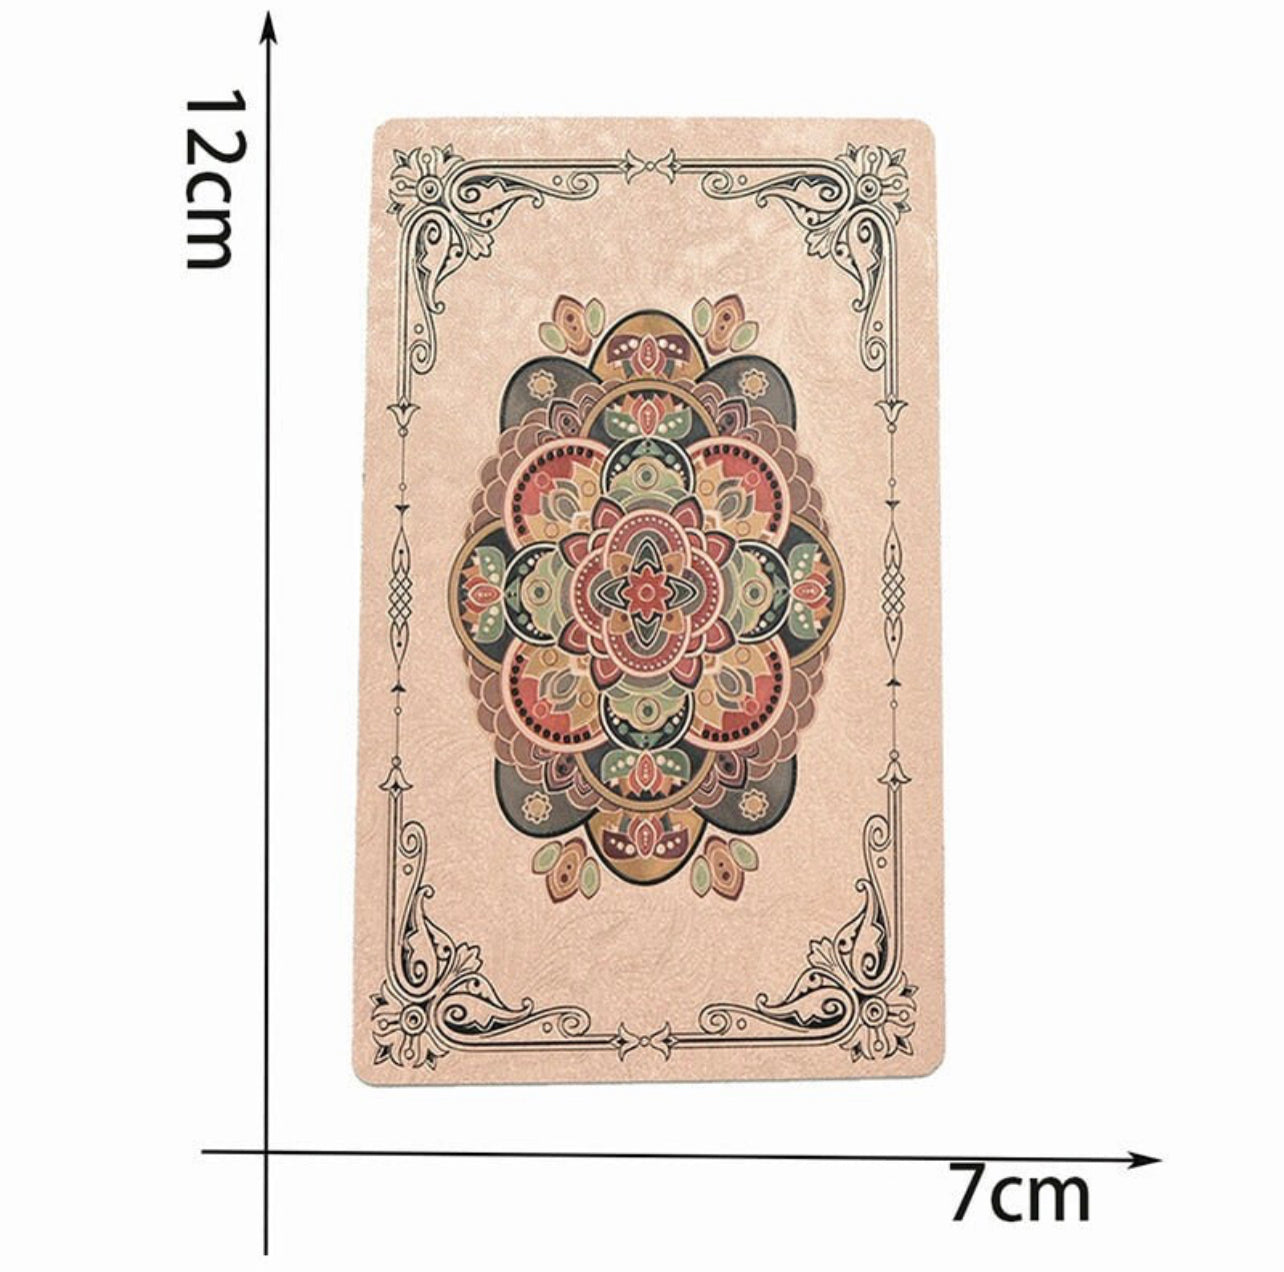 Pink Tarot Card size measurements